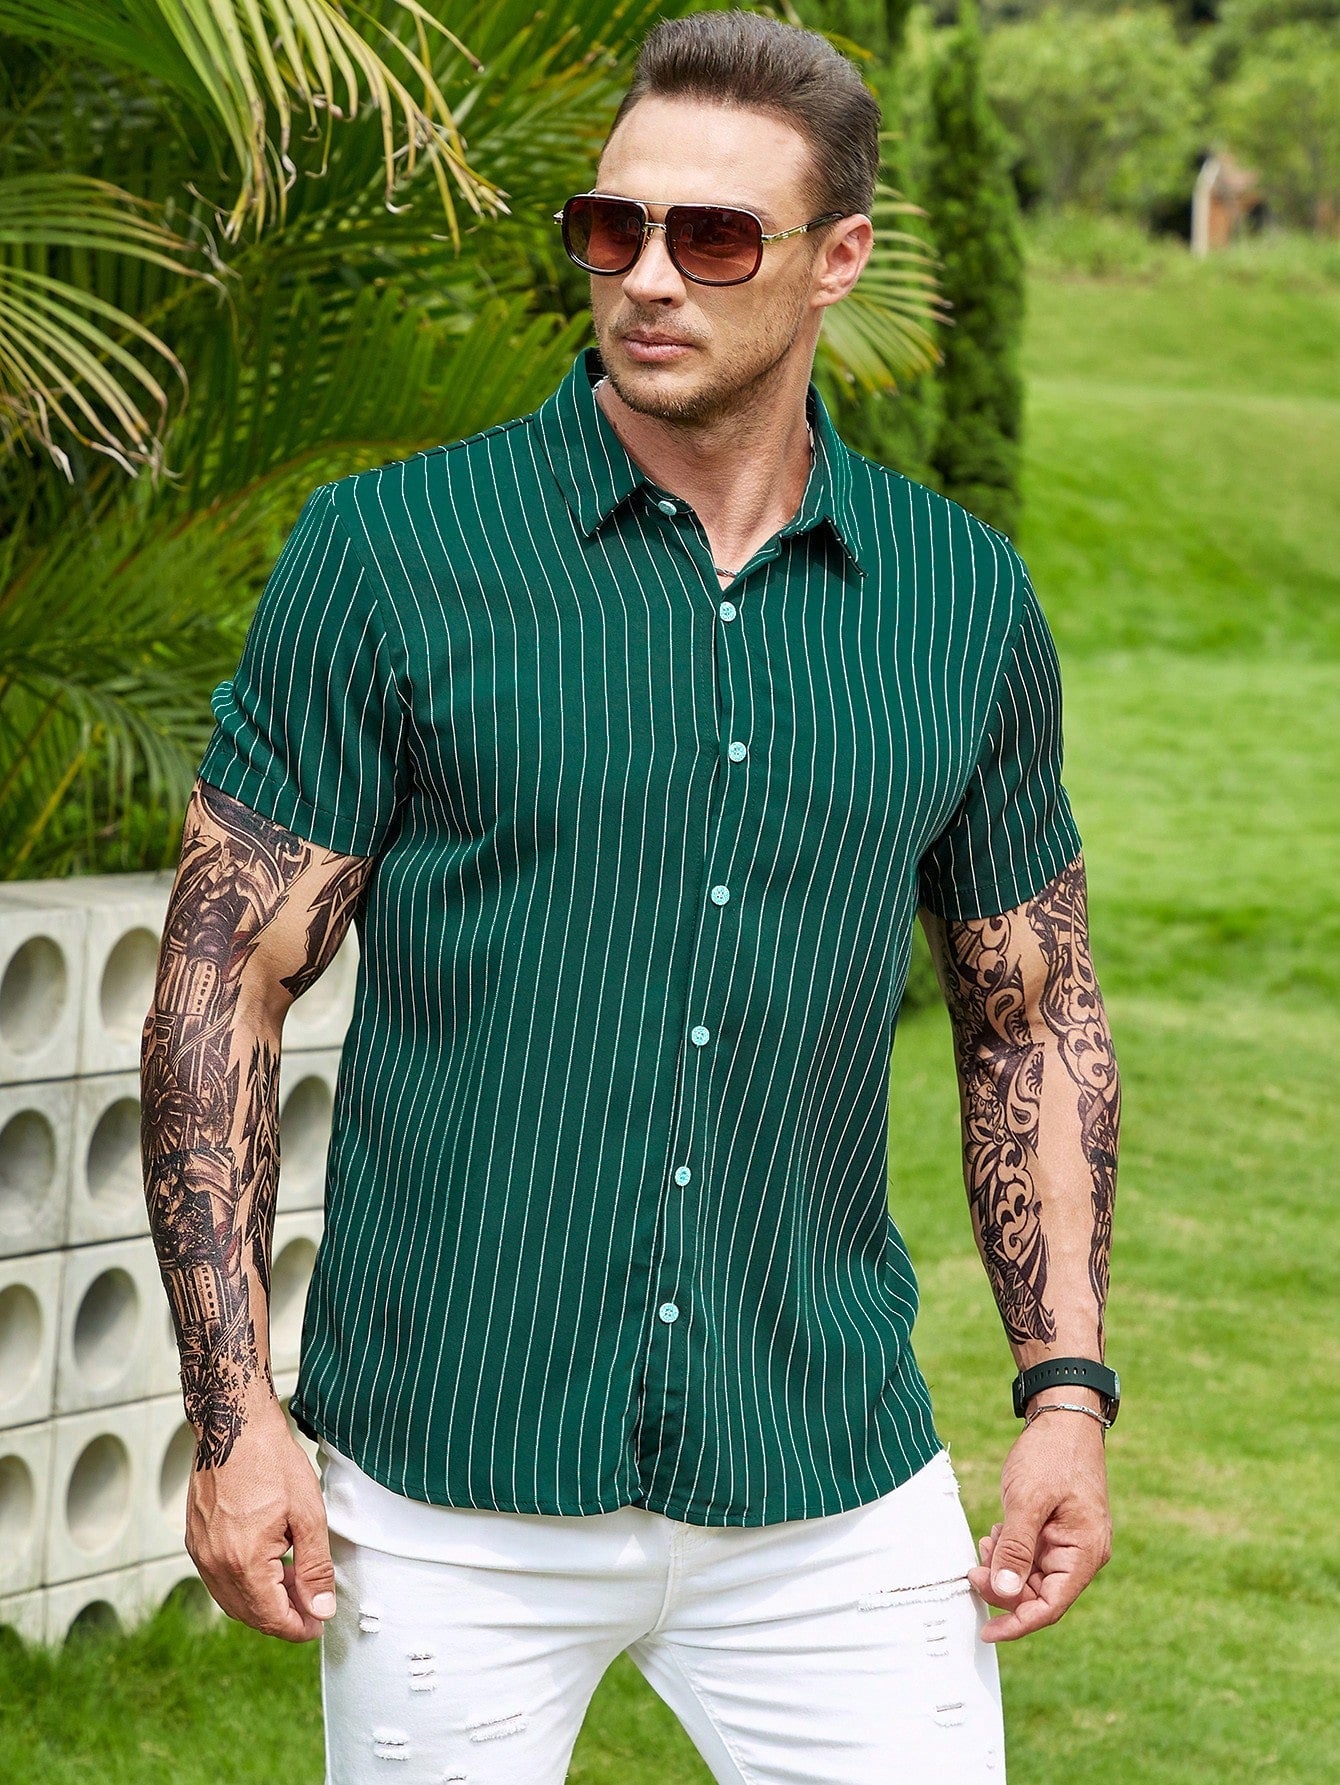 Manfinity Homme Men Striped Print Shirt - NextthinkShopsm2304084740473783